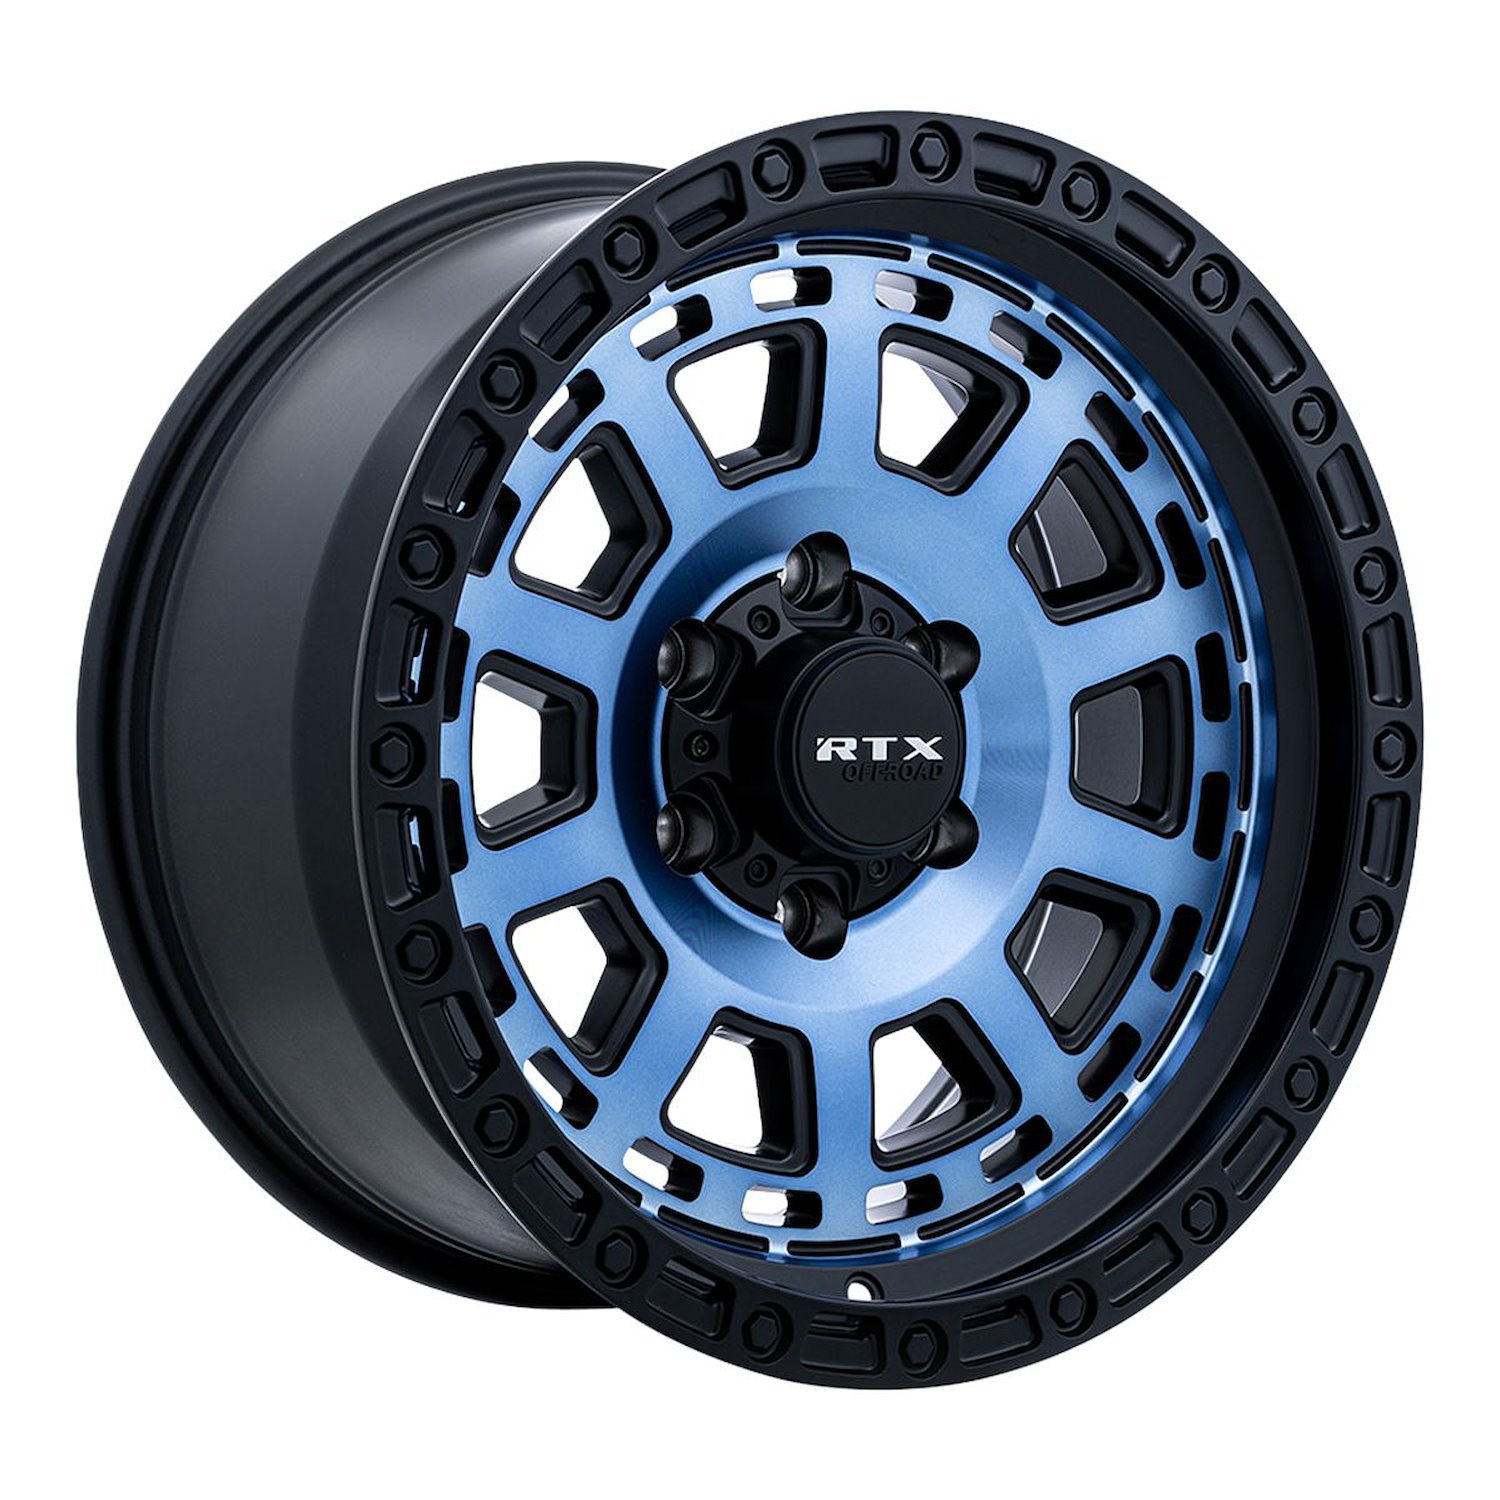 163801 Off-Road Series Titan Wheel [Size: 18" x 9"] Midnight Blue w/ Black Lip Finish